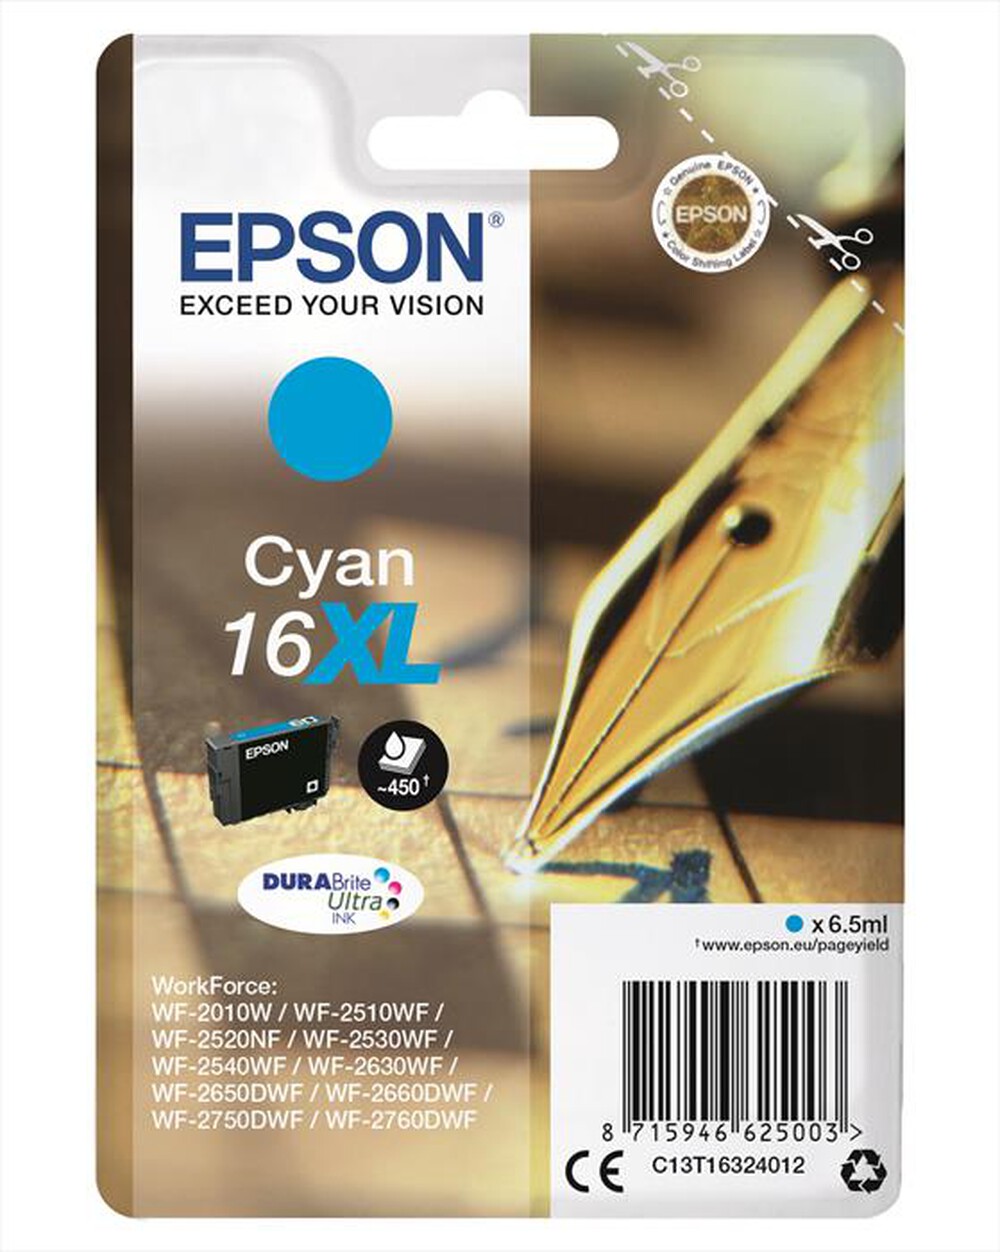 "EPSON - C13T16324022 - Ciano"